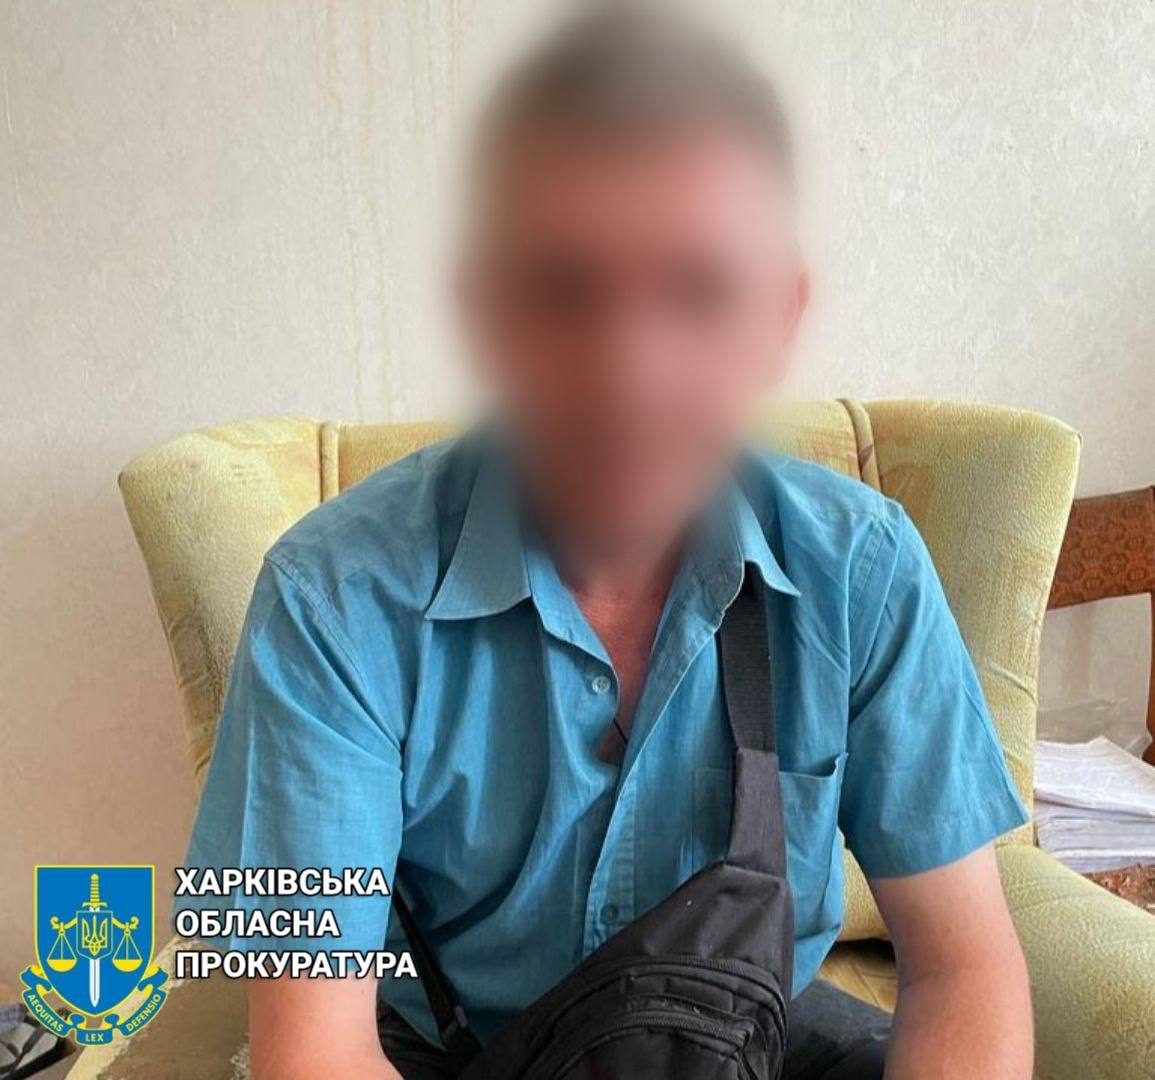 Изнасиловал 12-летнего мальчика в Харькове и пойман полицией педофил